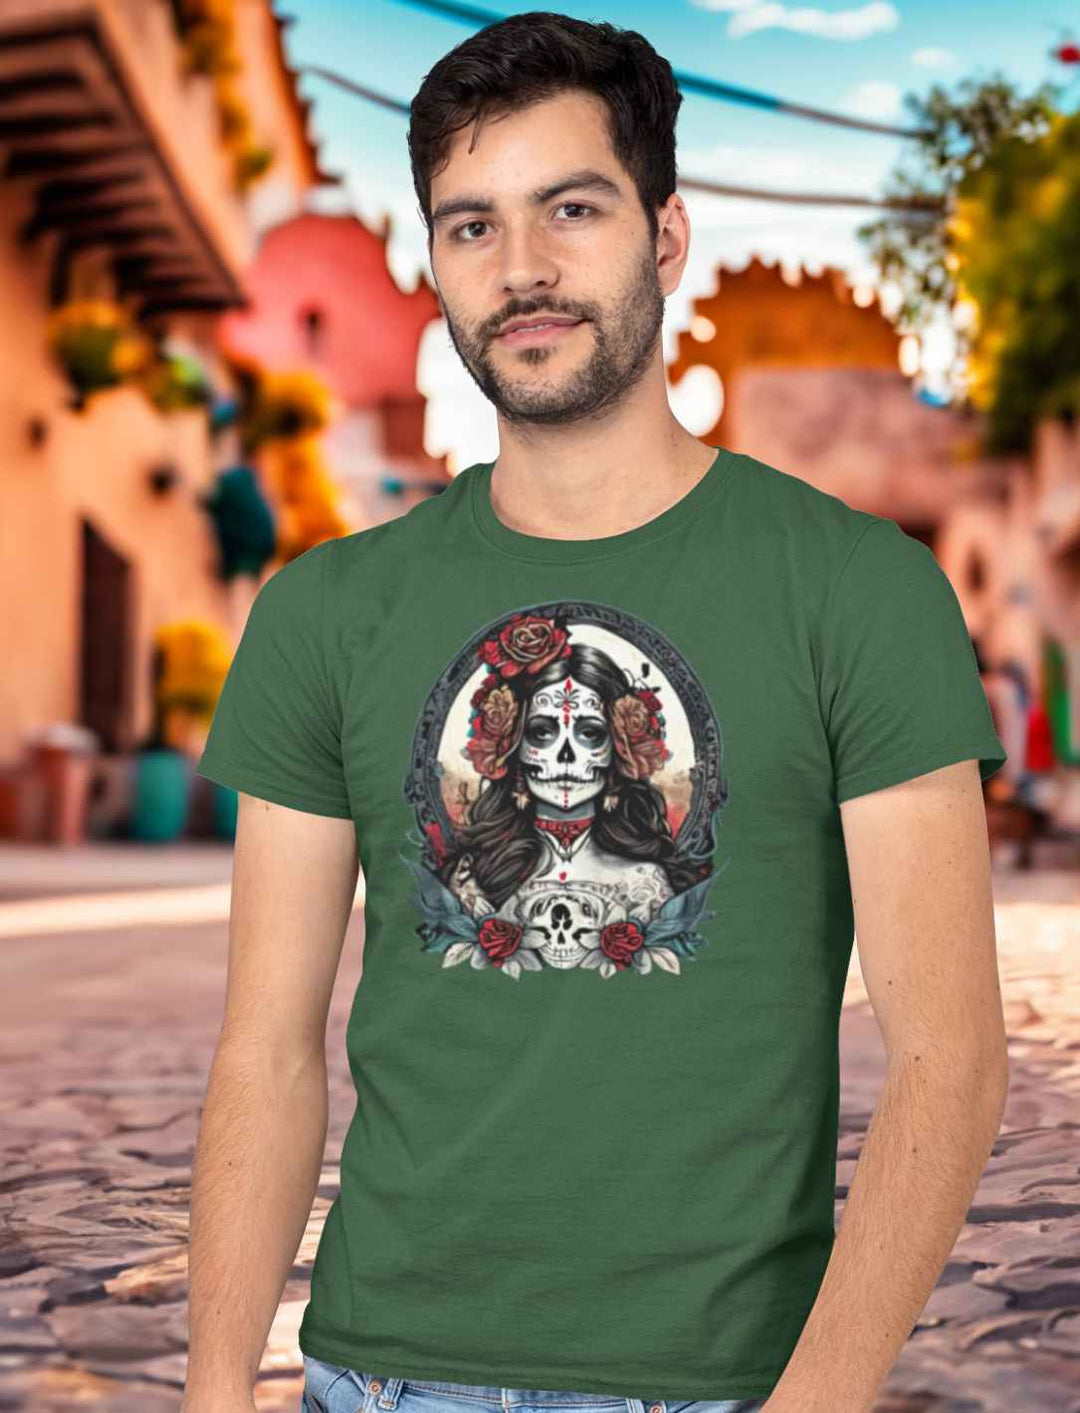 Junger Mann in Mexiko trägt das Unisex La Catrina Shirt in Grün, auf einer Straße am Día de los Muertos – Runental.de